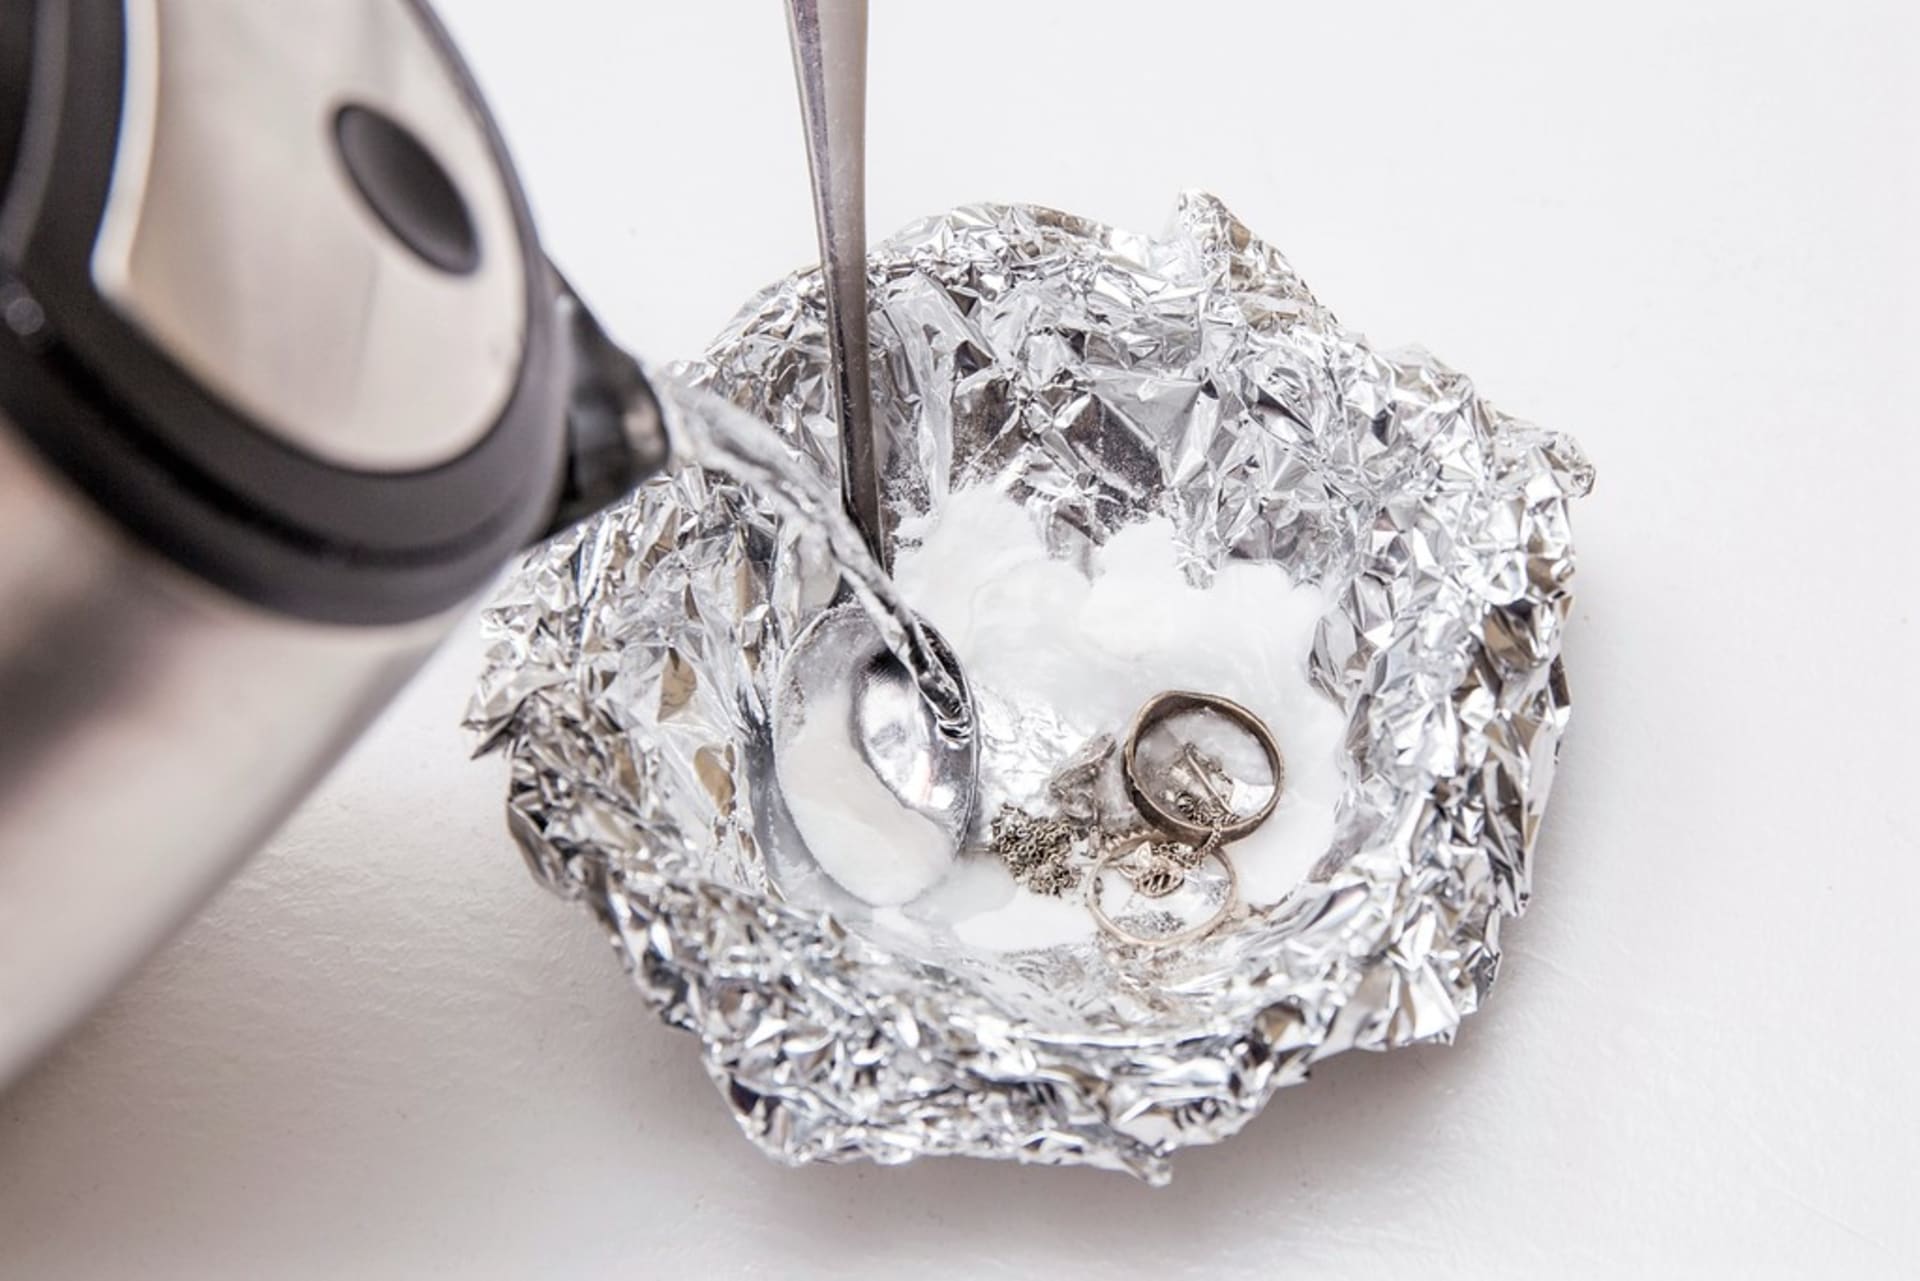 Údržba stříbrných šperků je o něco náročnější než zlatých, protože na vzduchu stříbro rychle oxiduje a černá, a tak stříbro musíte čistit častěji.